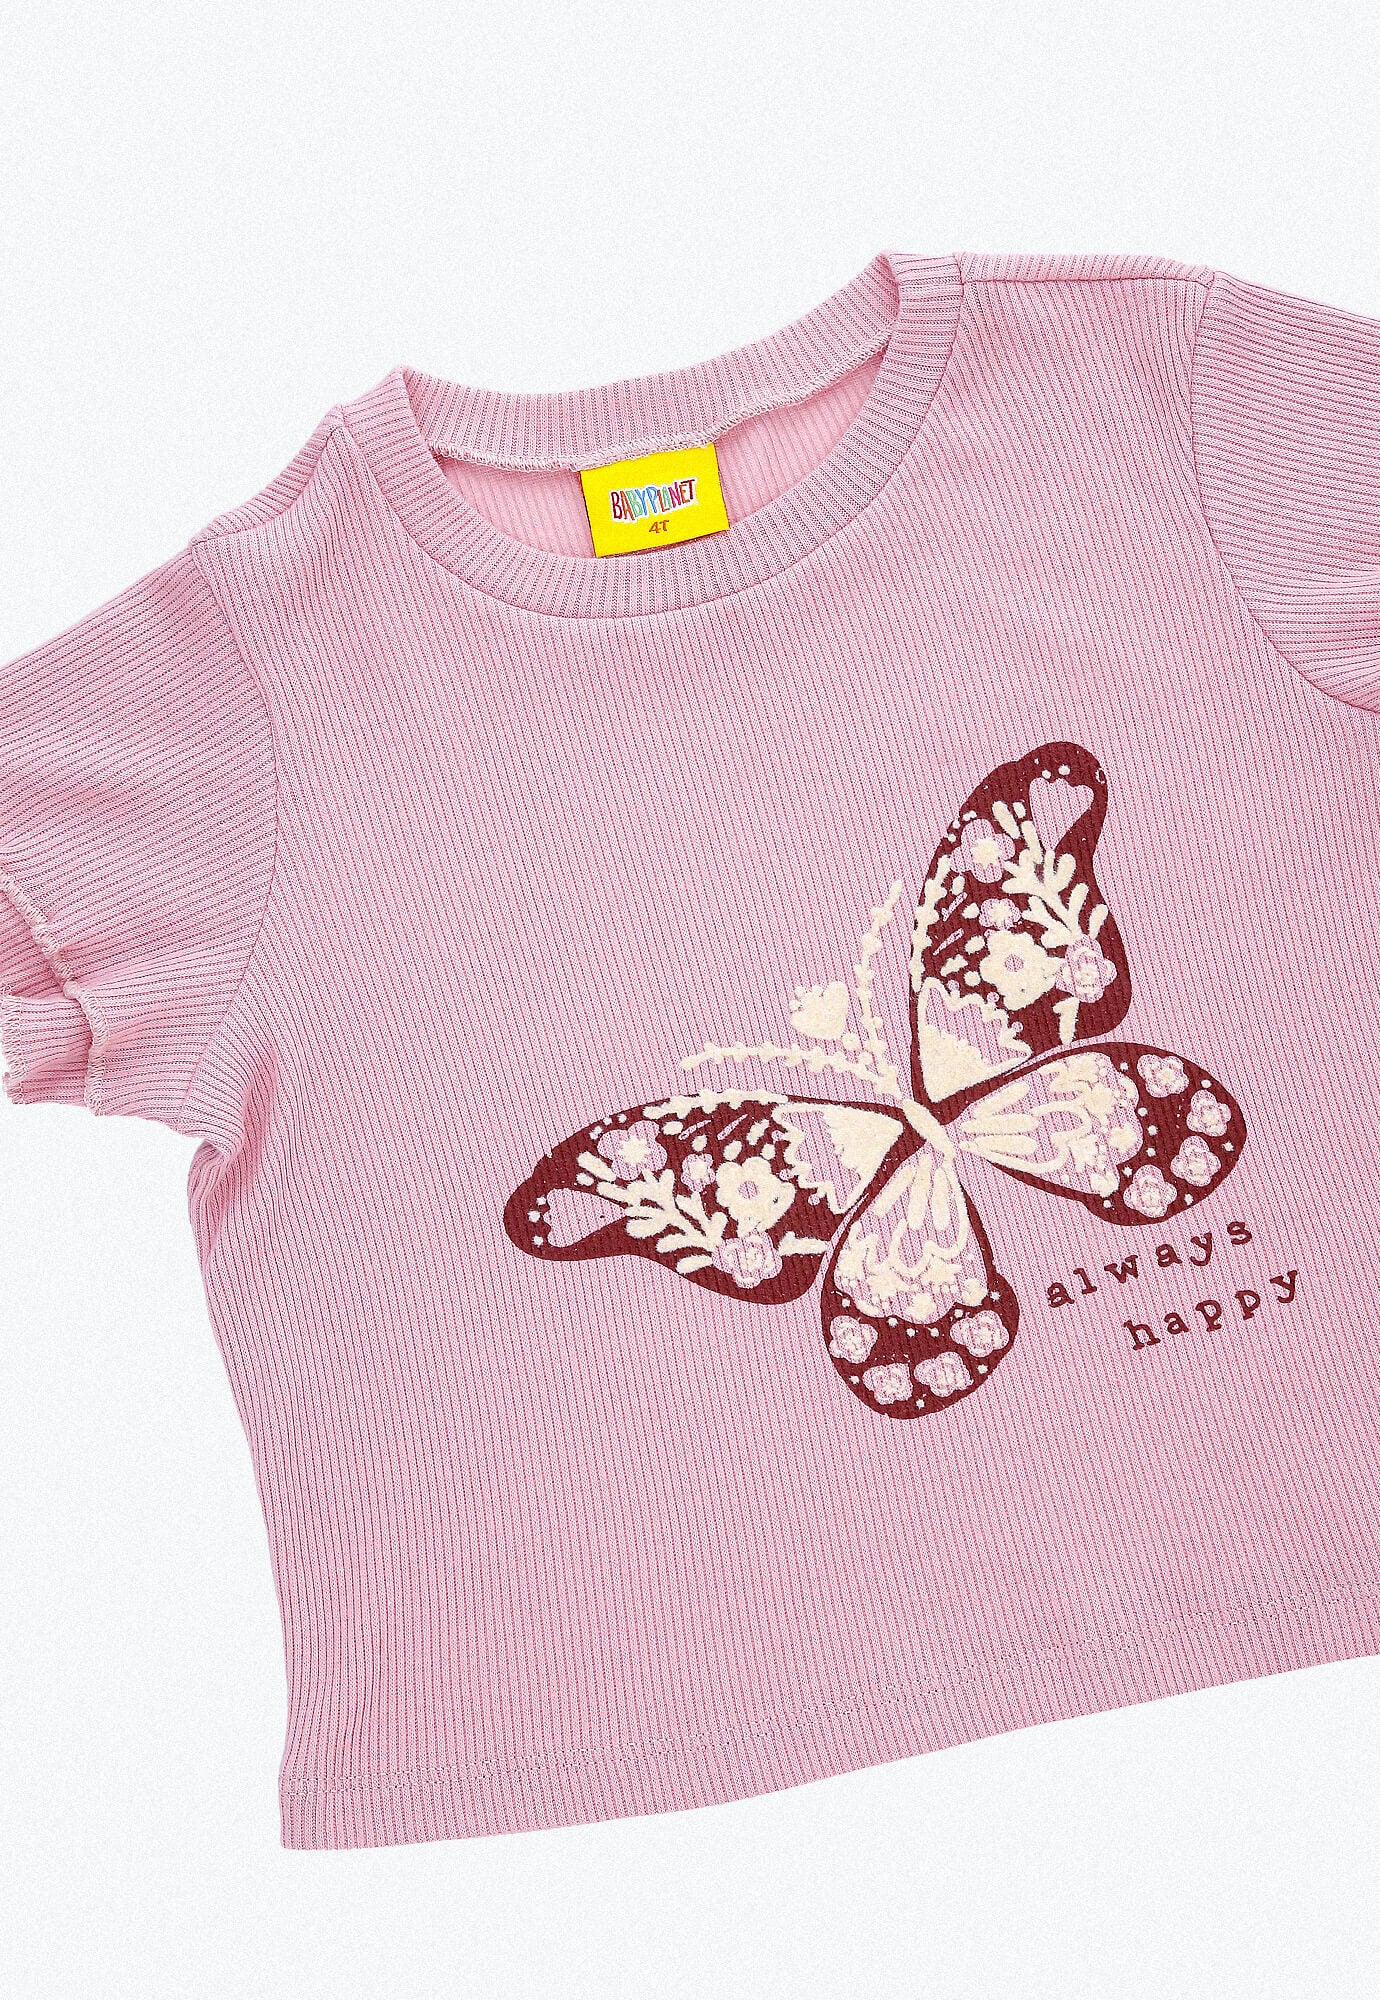 Conjunto largo, camiseta rosa claro en rib con estampado frontal y pantalón rosa claro con bota amplia para bebé niña